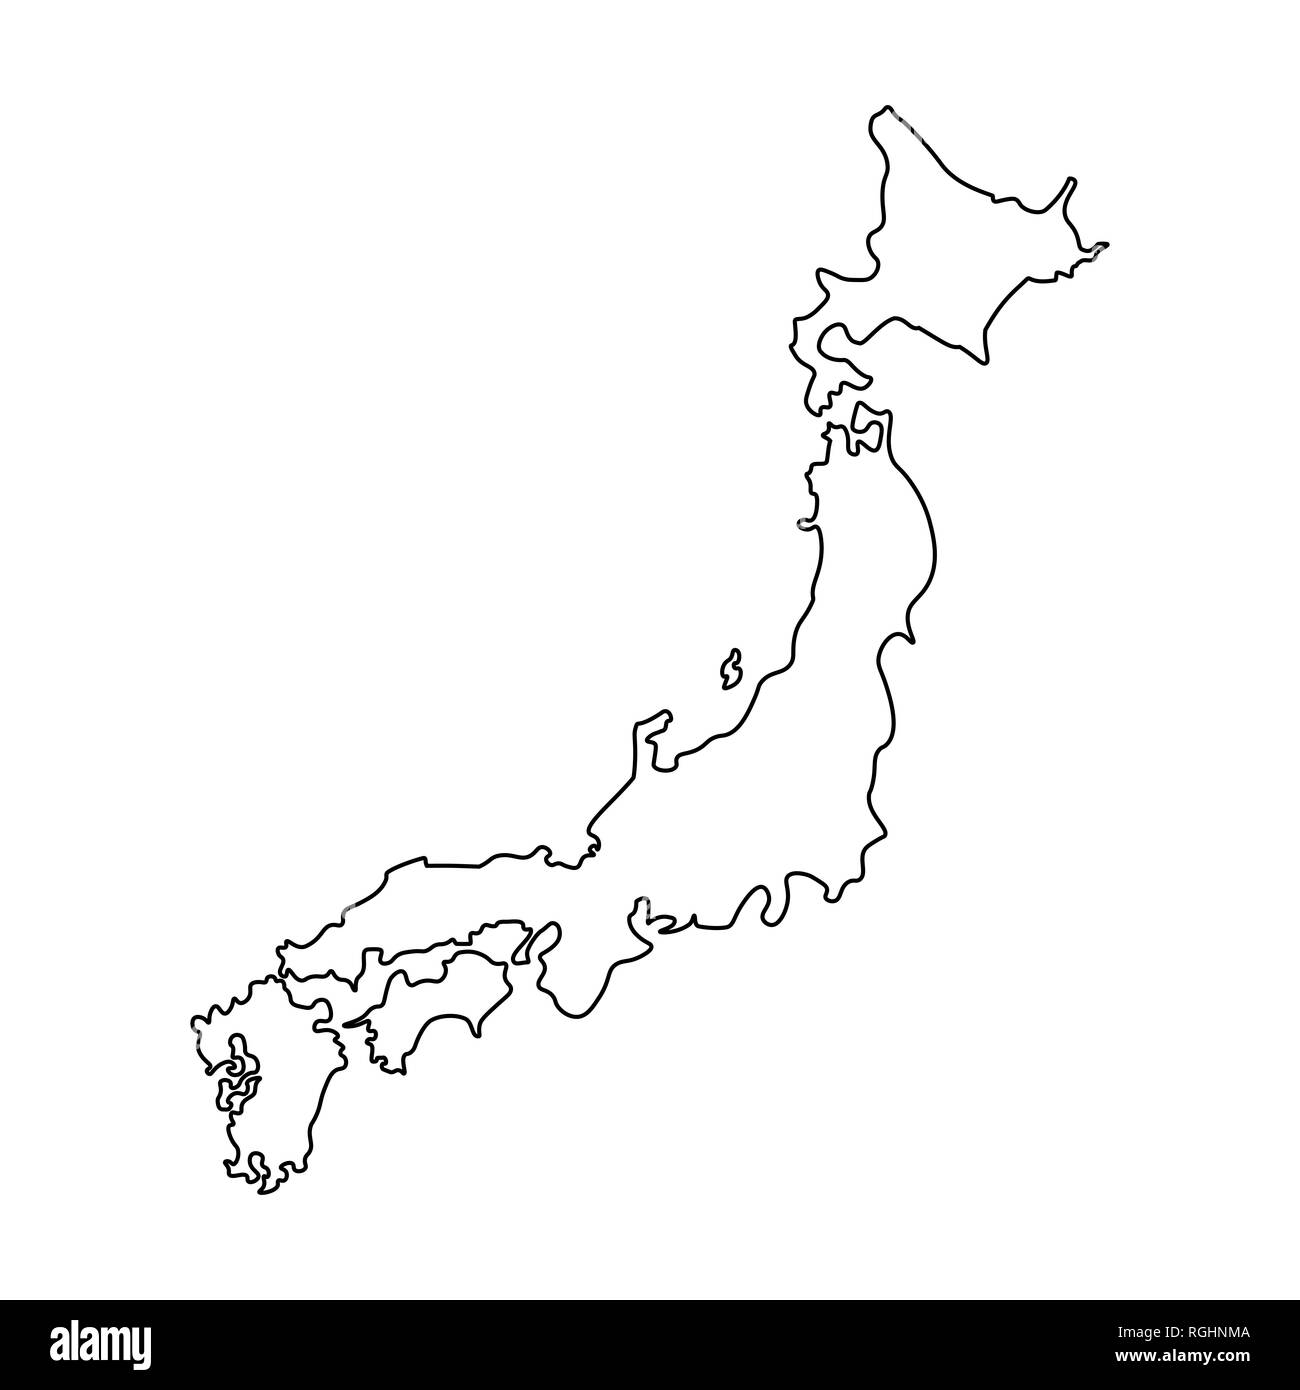 Carte Japon Carte Realistic Rendu image libre de droit par  Minny0012011@gmail.com © #392902226